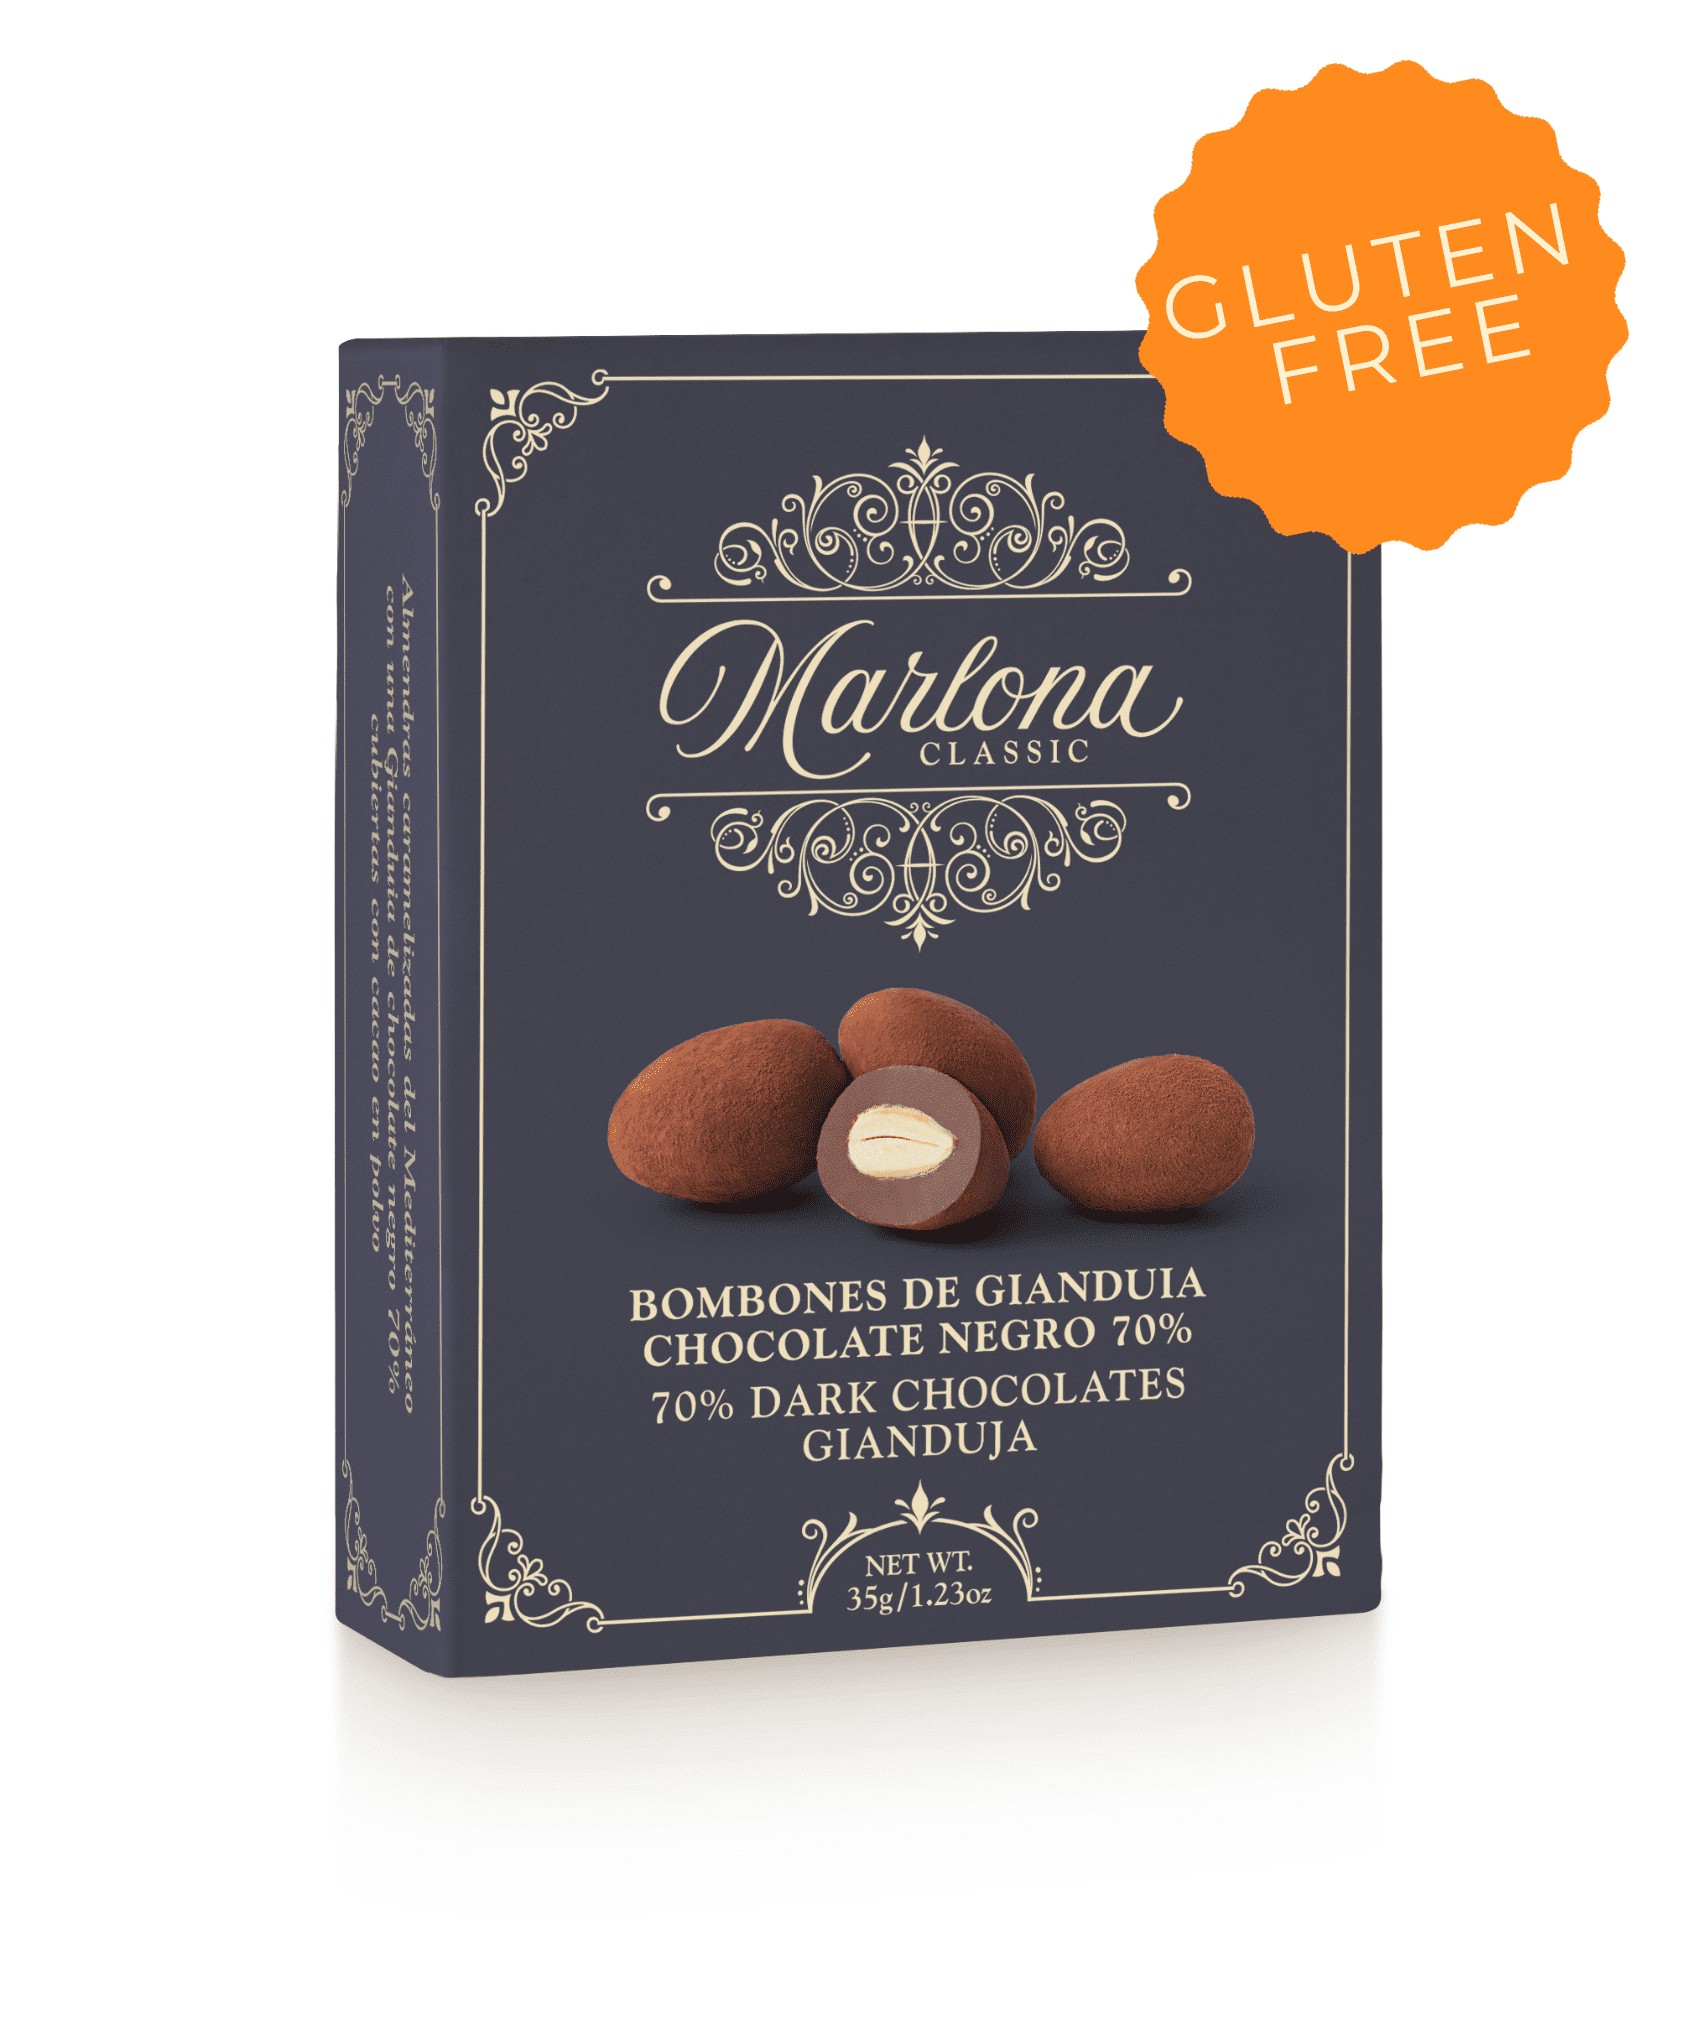 Gianduia dark chocolate 70% bonbons